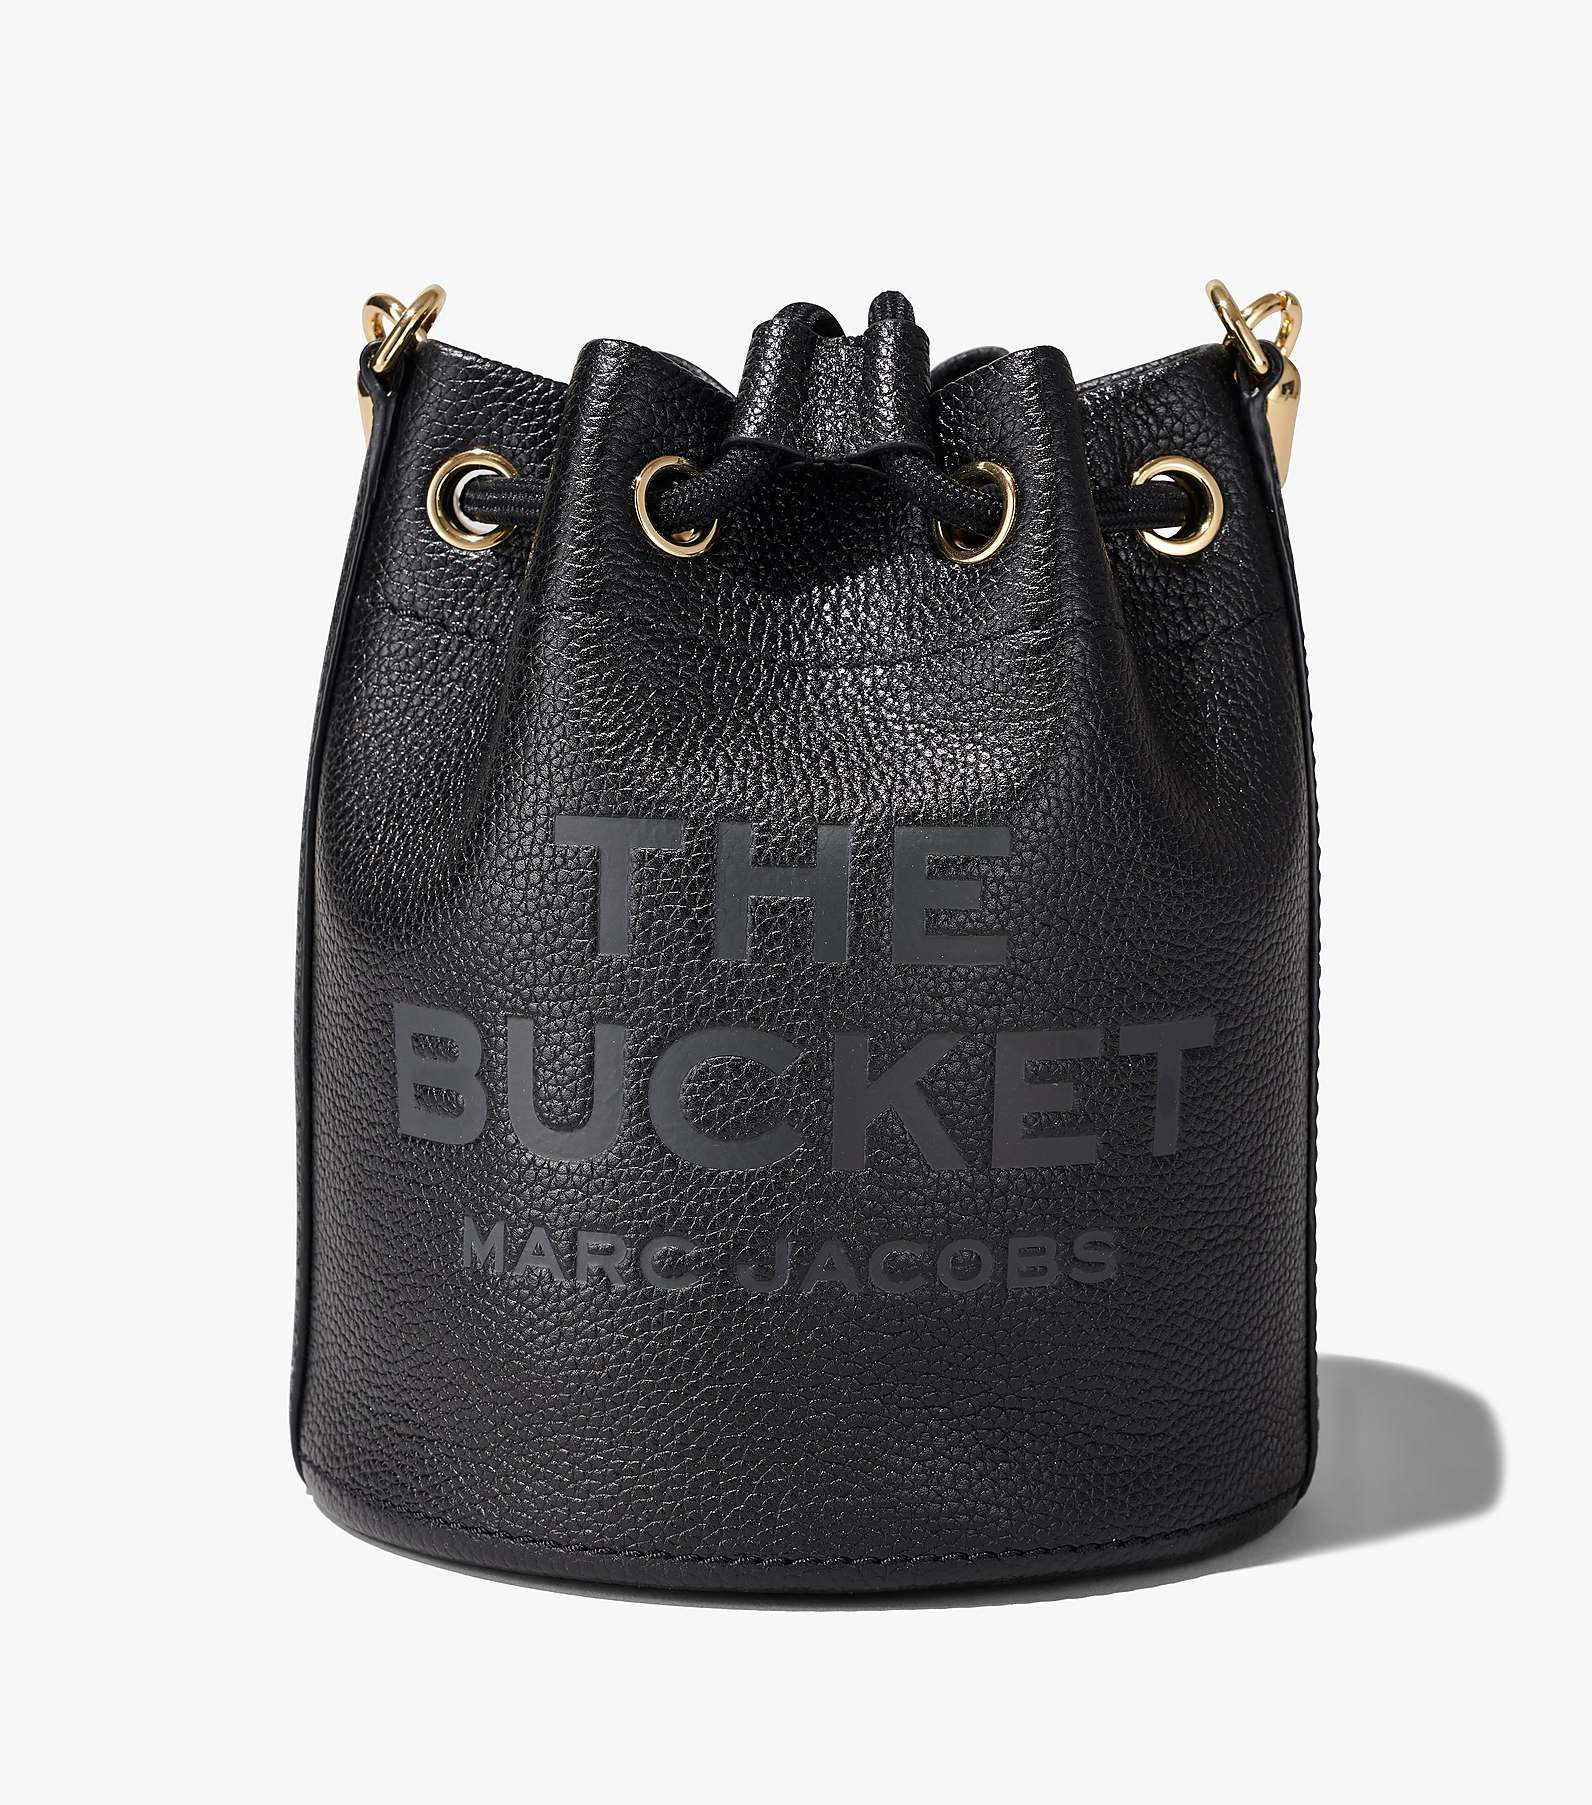 The Leather Bucket Bag(The Bucket)